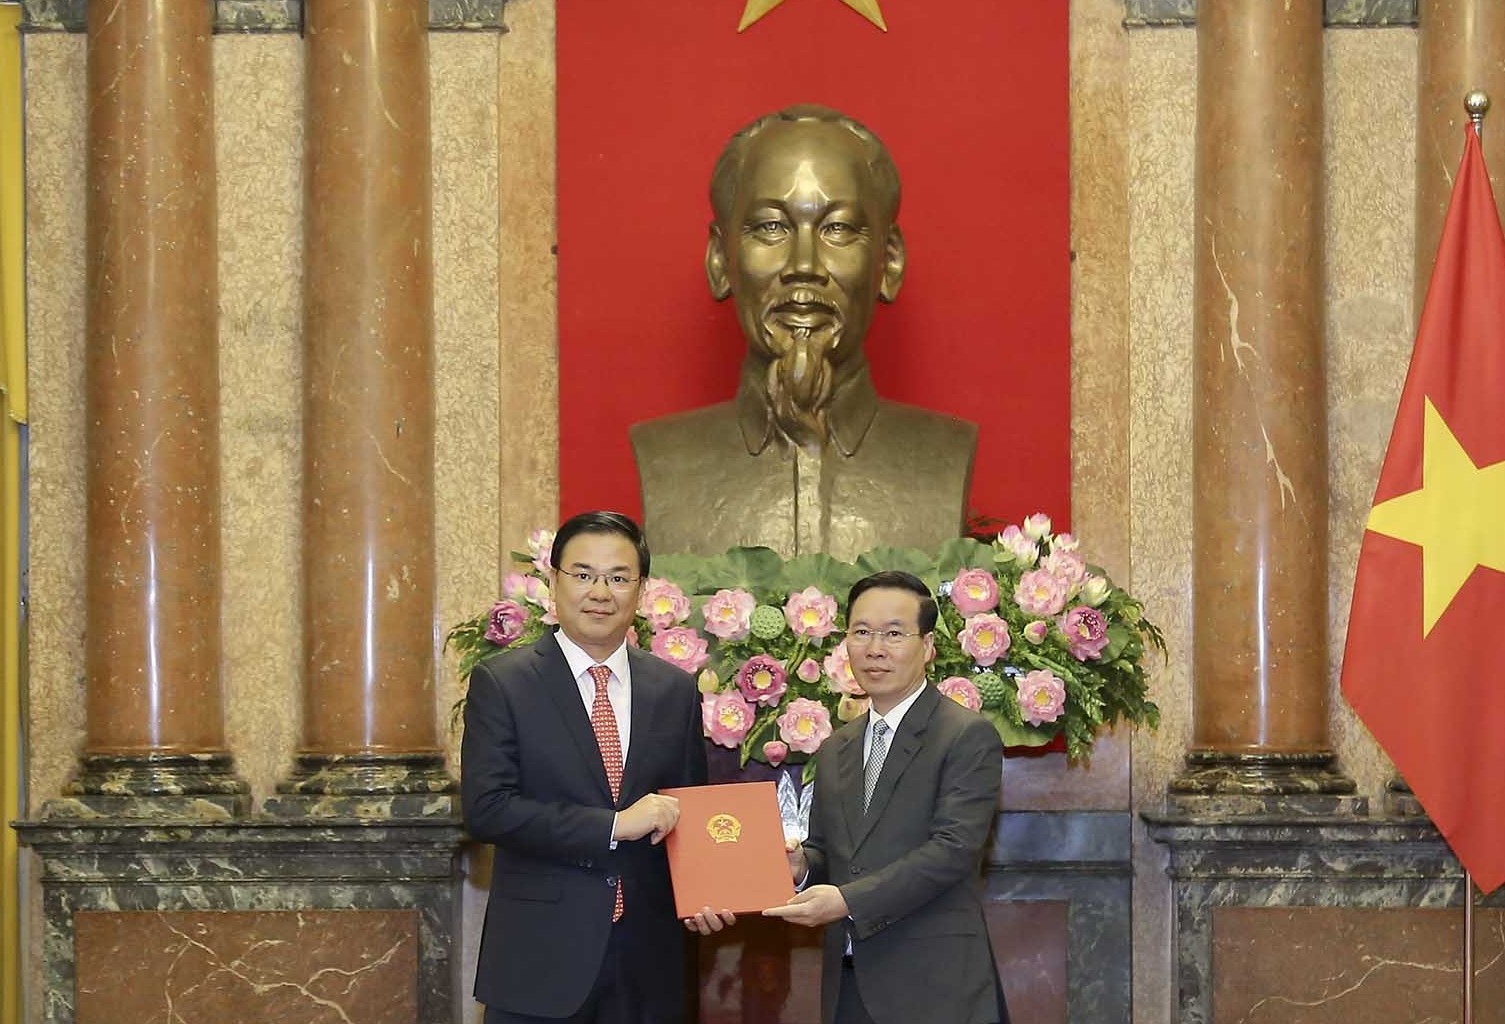 Chủ tịch nước trao quyết định bổ nhiệm Đại sứ Việt Nam tại Nhật Bản